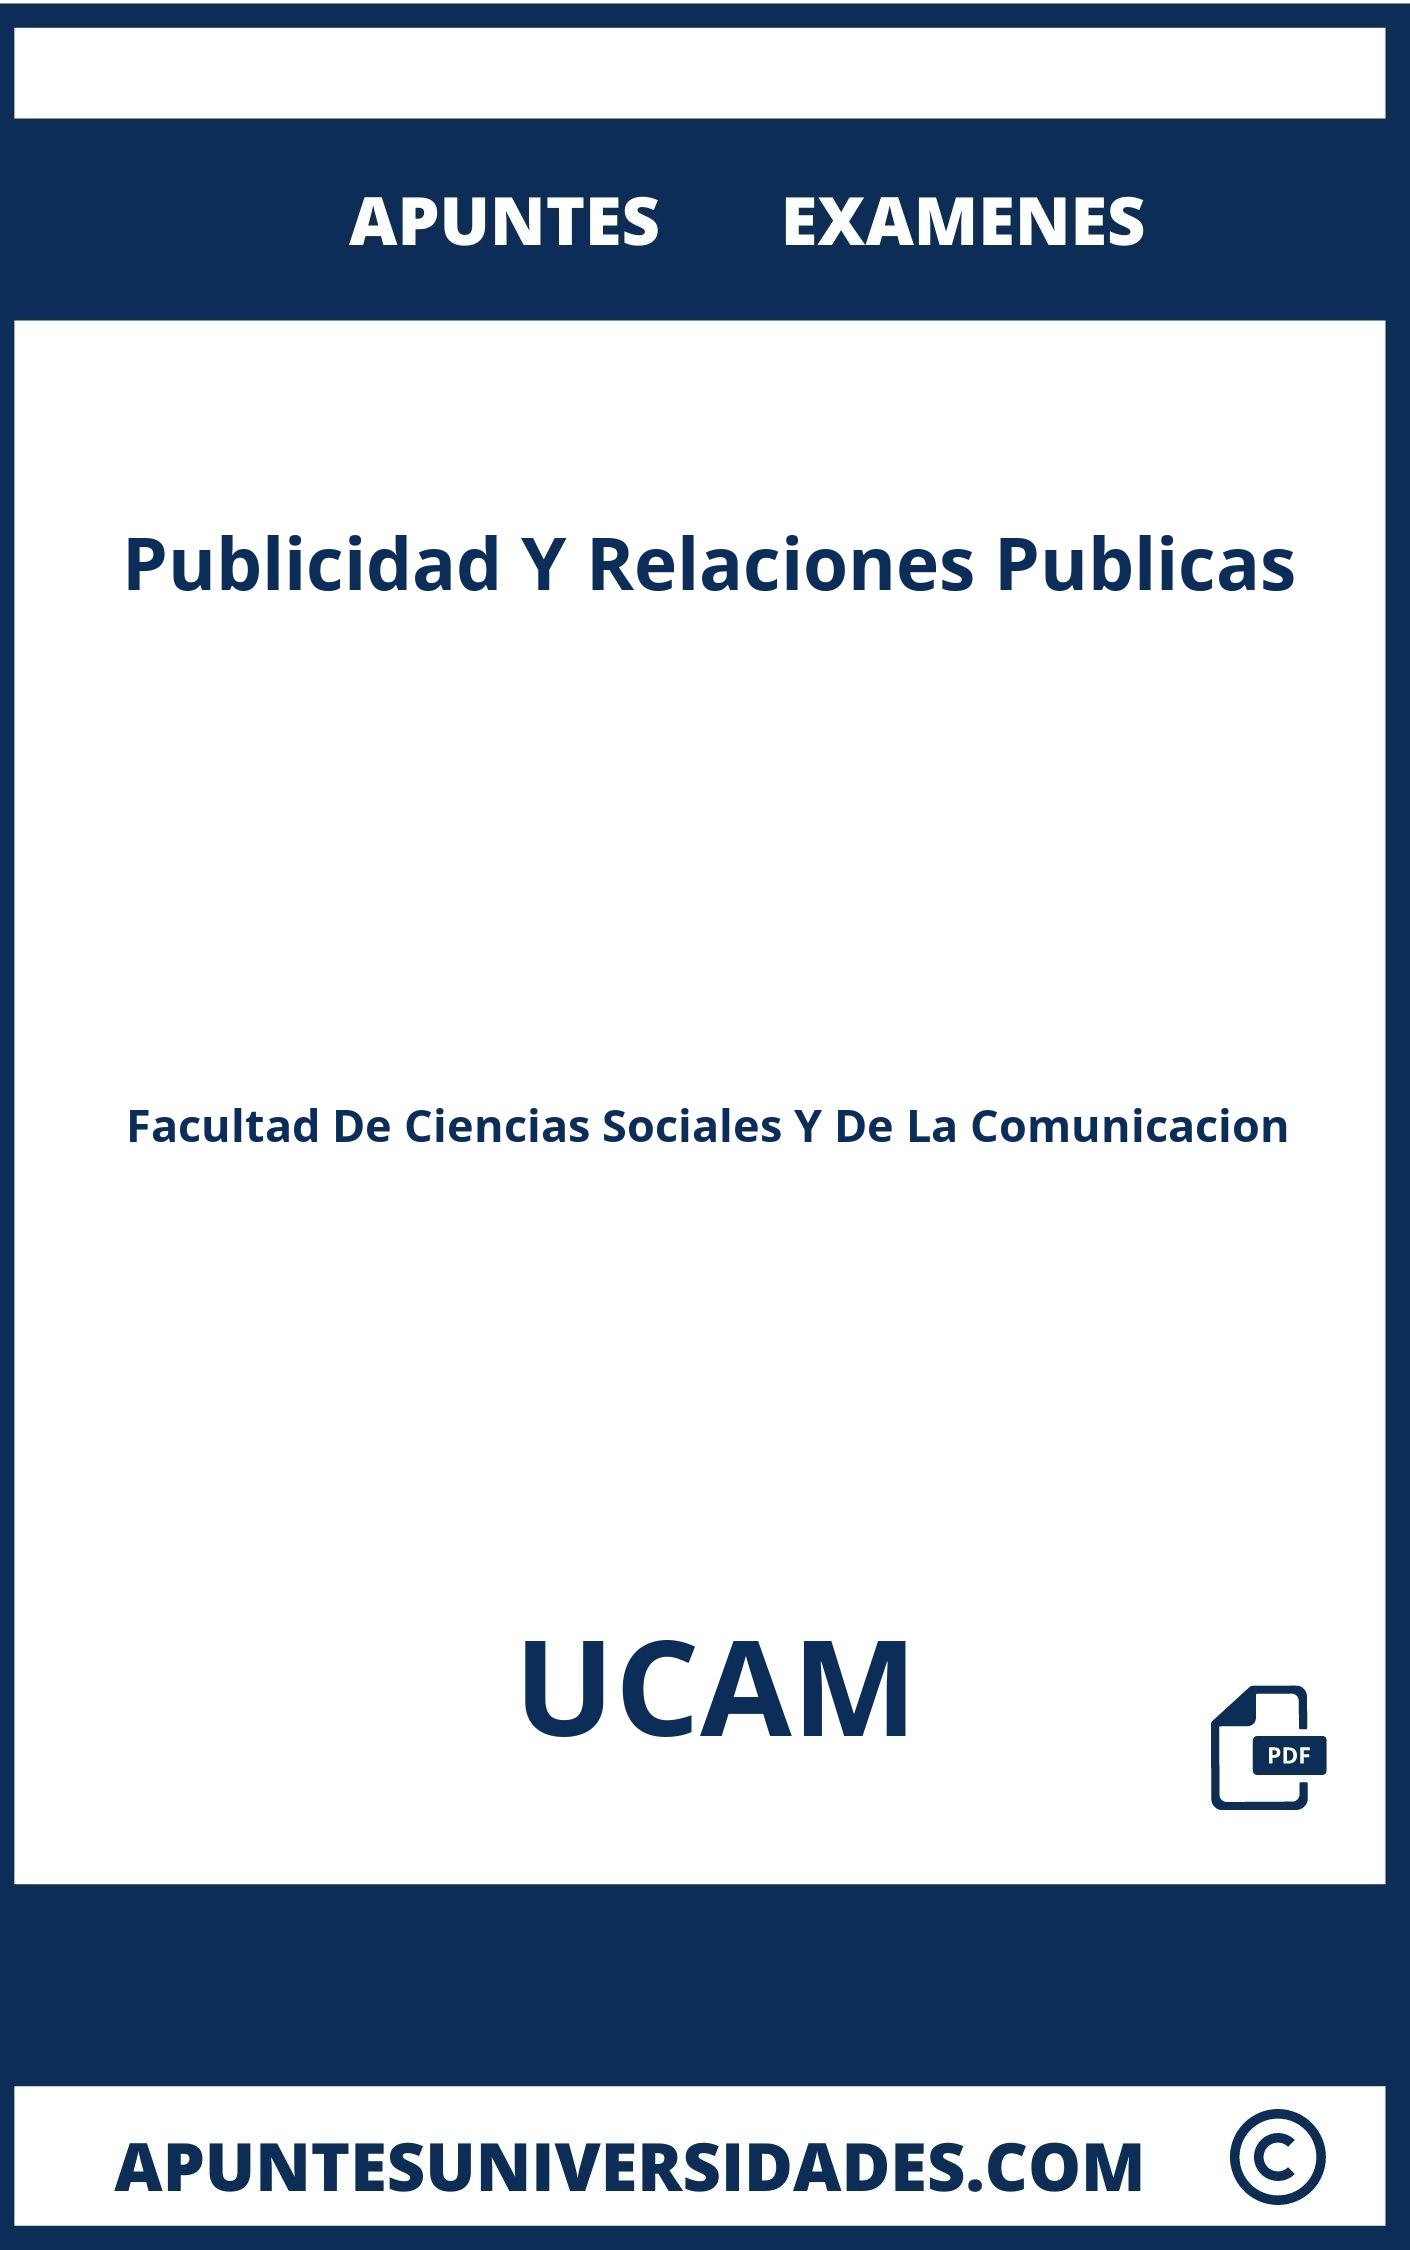 Examenes y Apuntes de Publicidad Y Relaciones Publicas UCAM